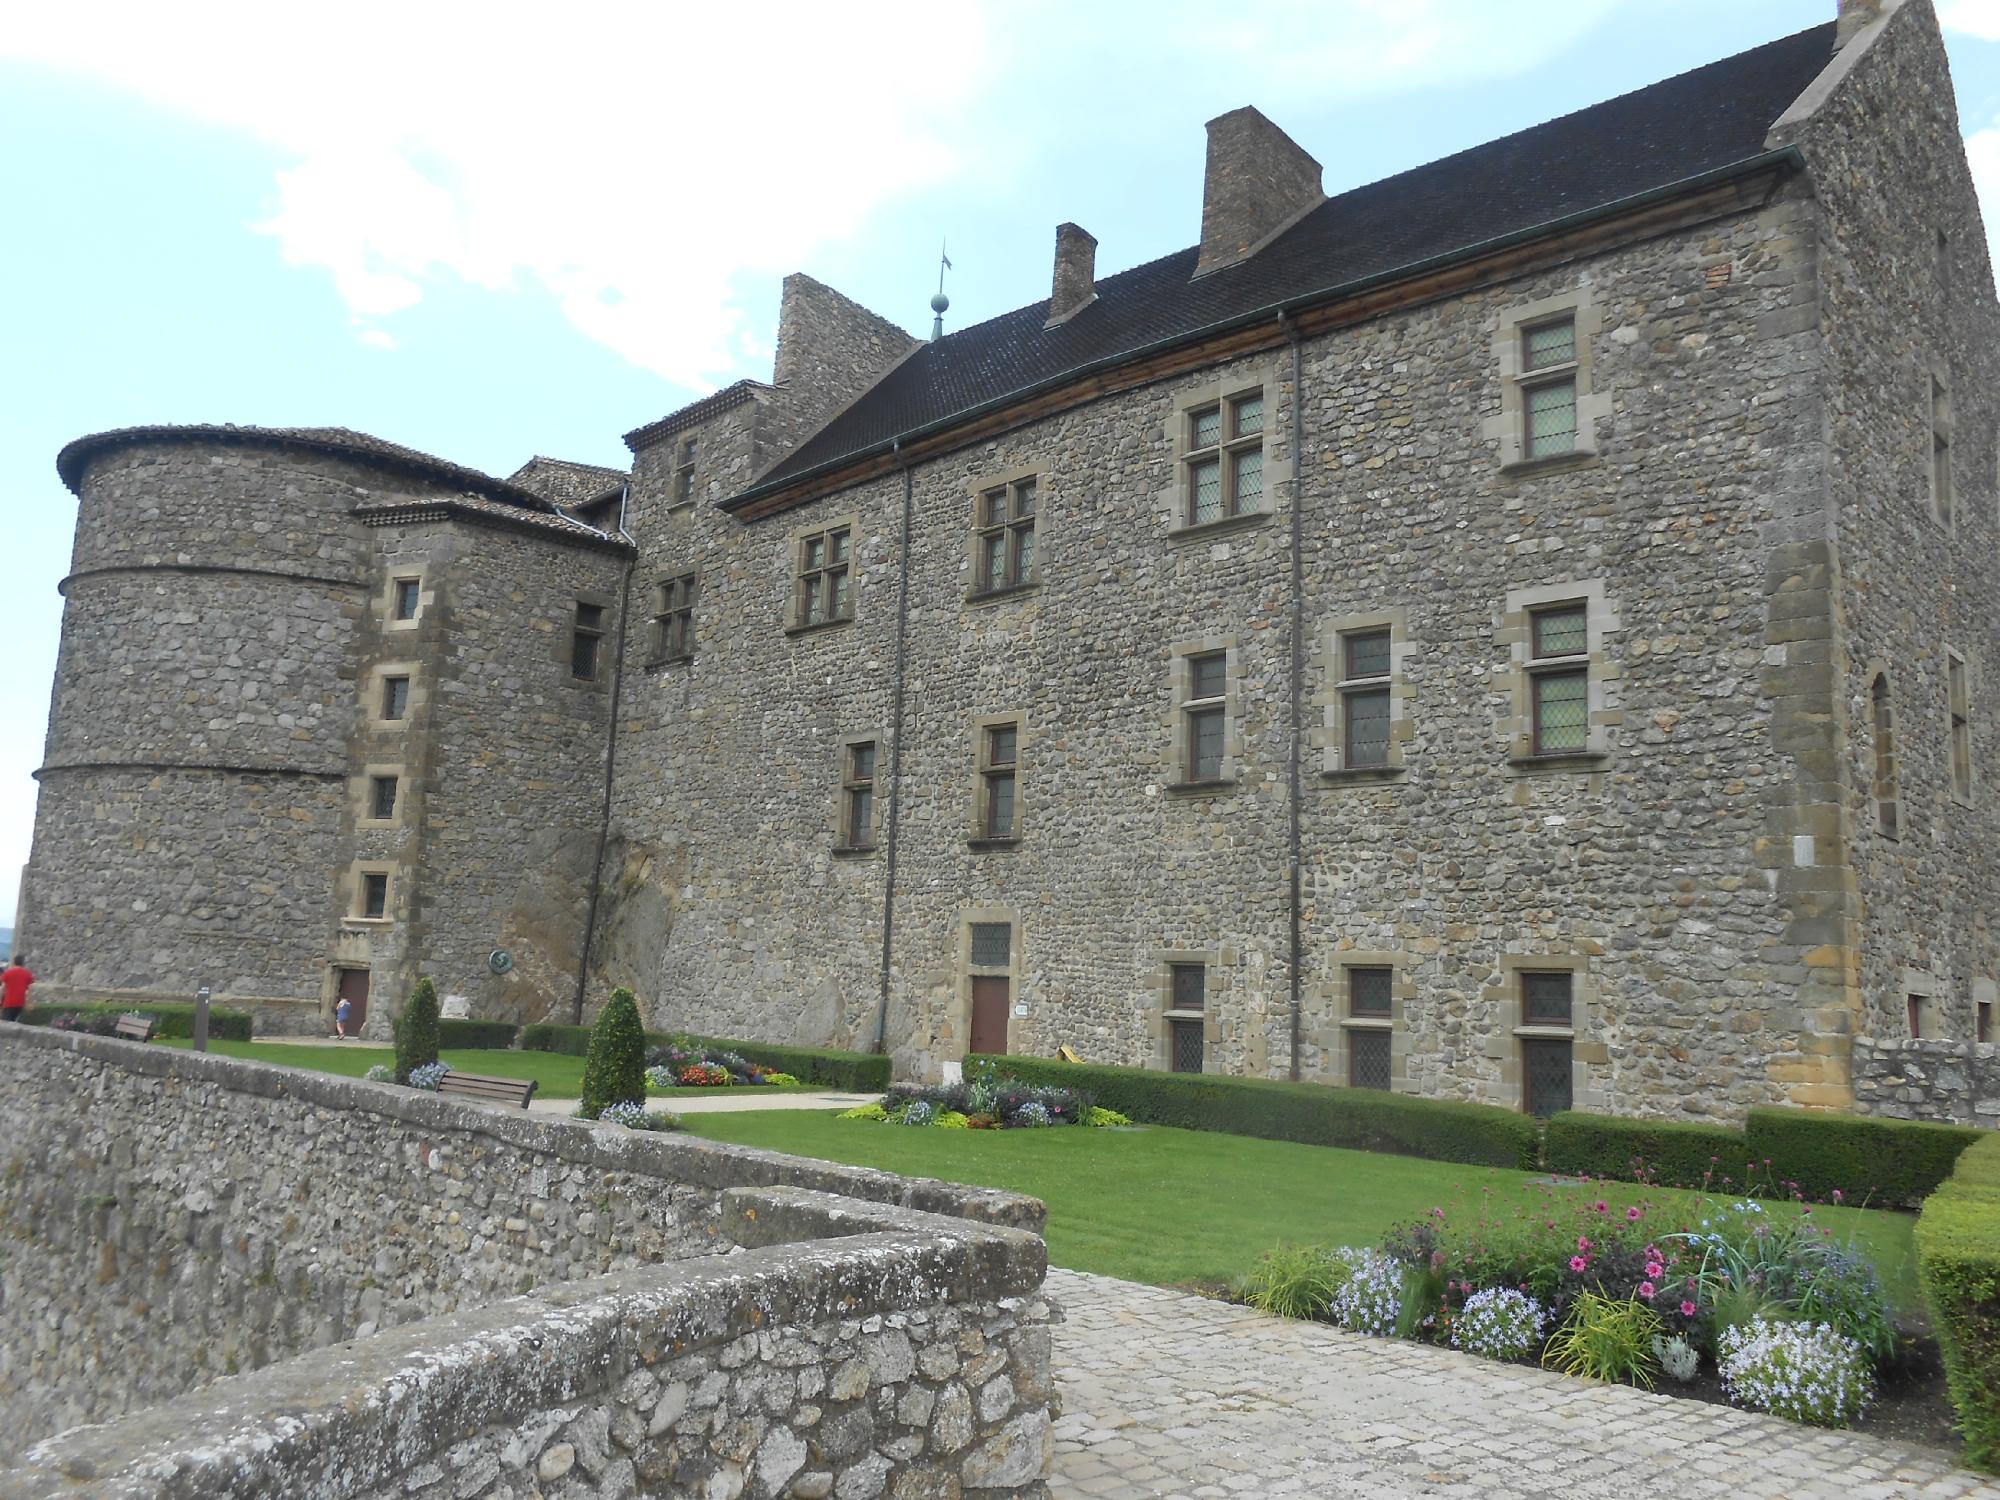 1265-chateau-musee-tournon-ardeche.jpg